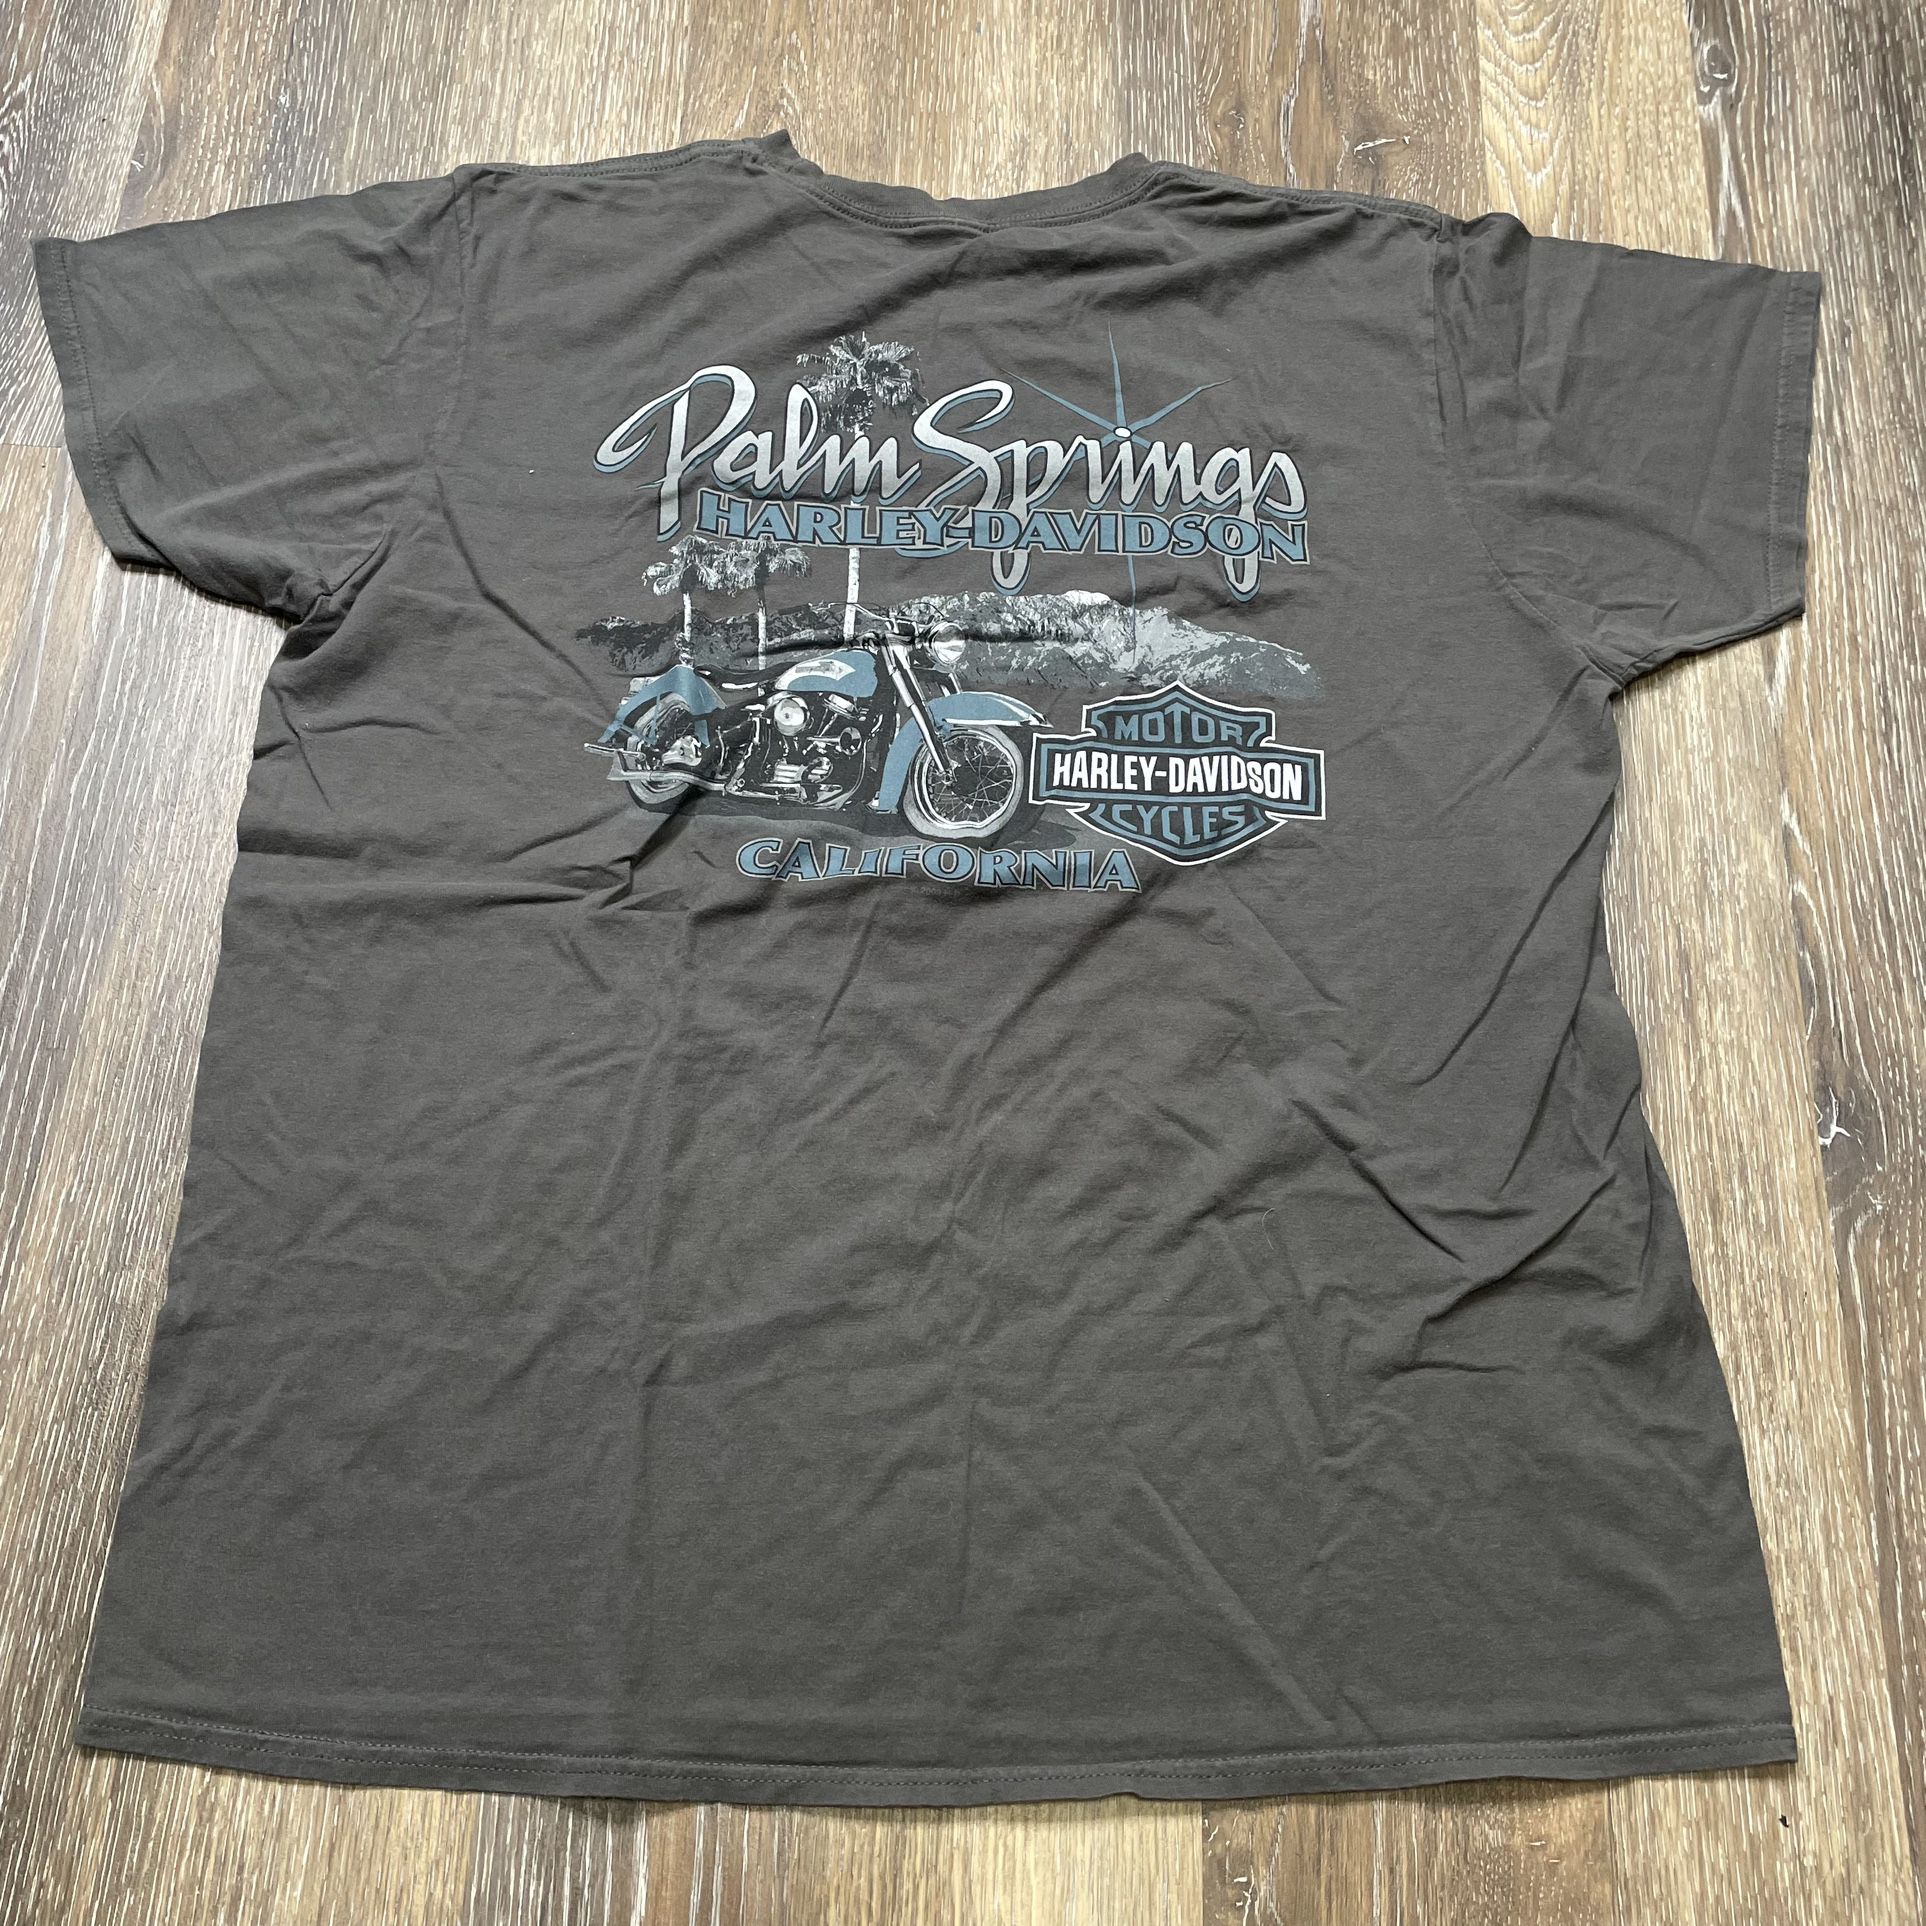 Harley Davidson Palm Springs Shirt